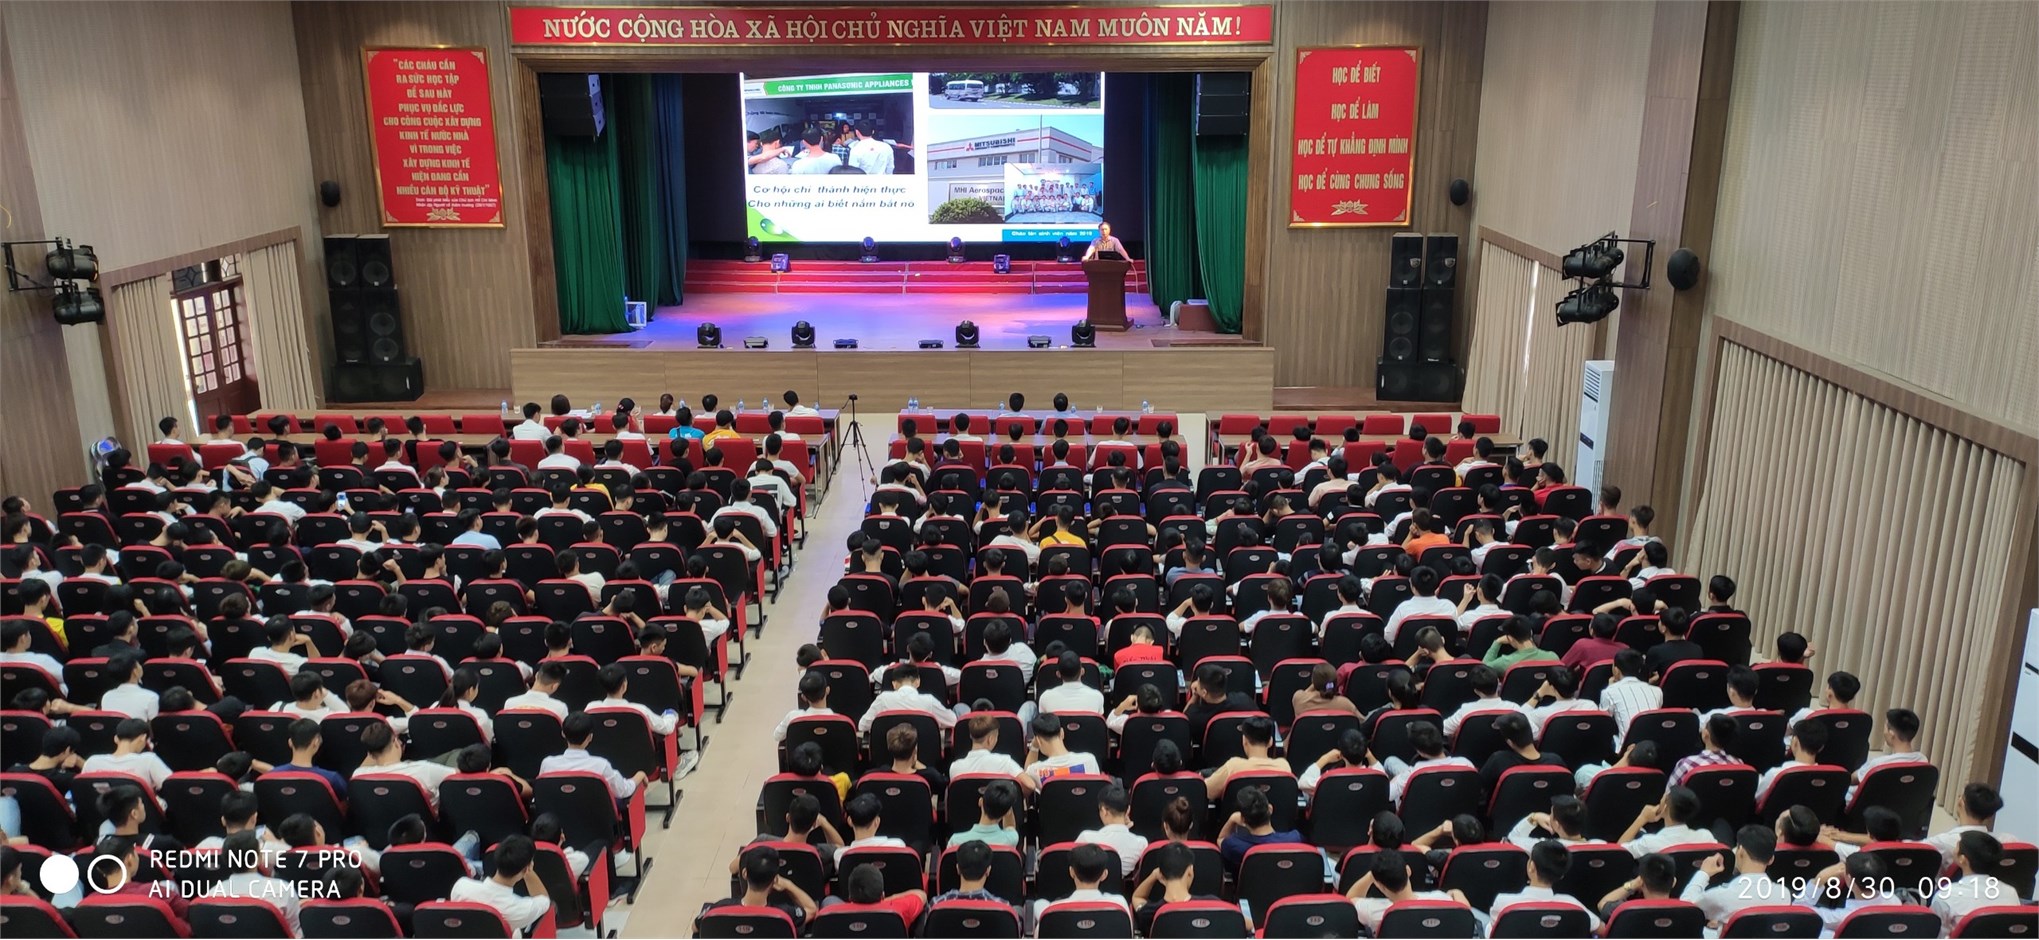 Sôi động ngày hội “Chào tân sinh viên 2019” – Trung tâm Việt Nhật